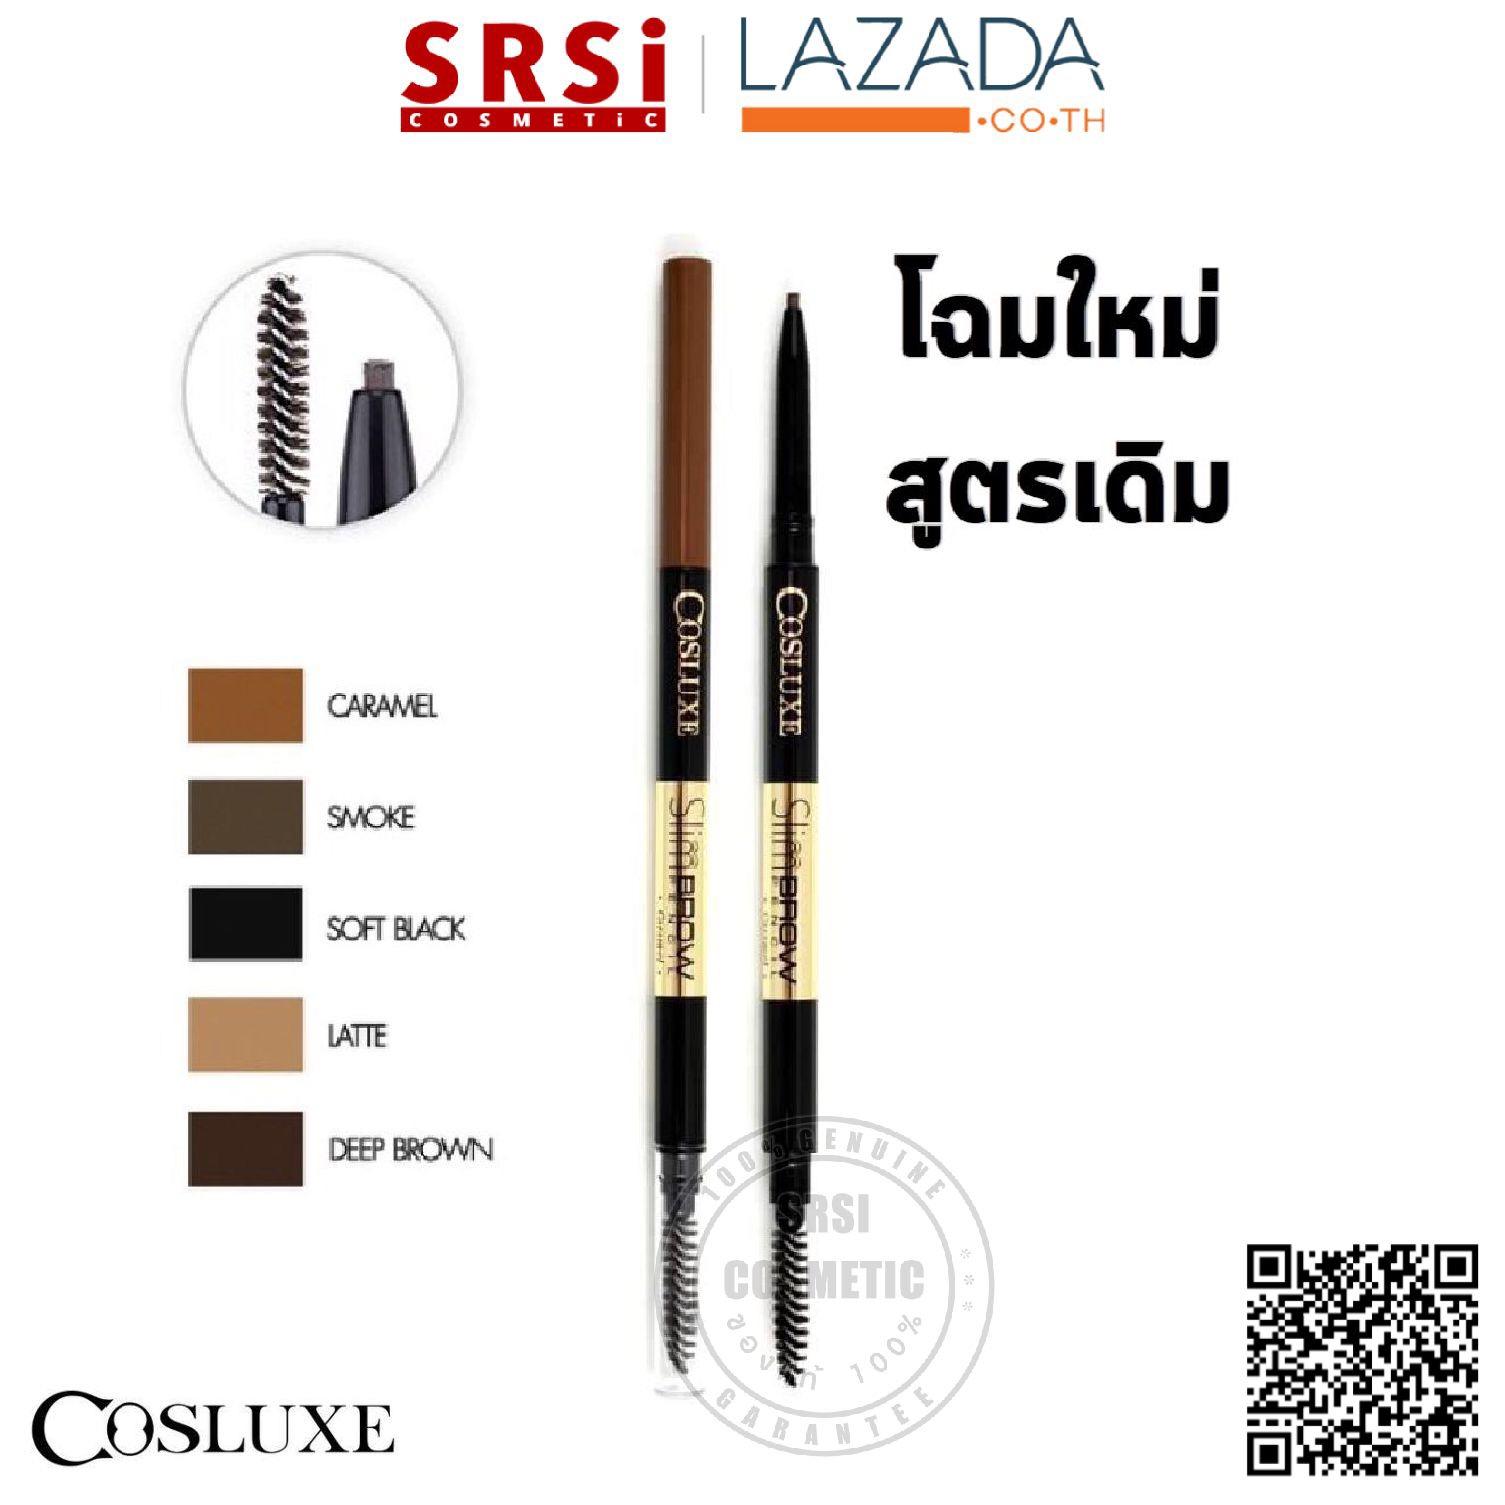 ซื้อที่ไหน Cosluxe SlimBrow Pencil : Cosluxe ดินสอเขียนคิ้ว x 1 ชิ้น SRSi